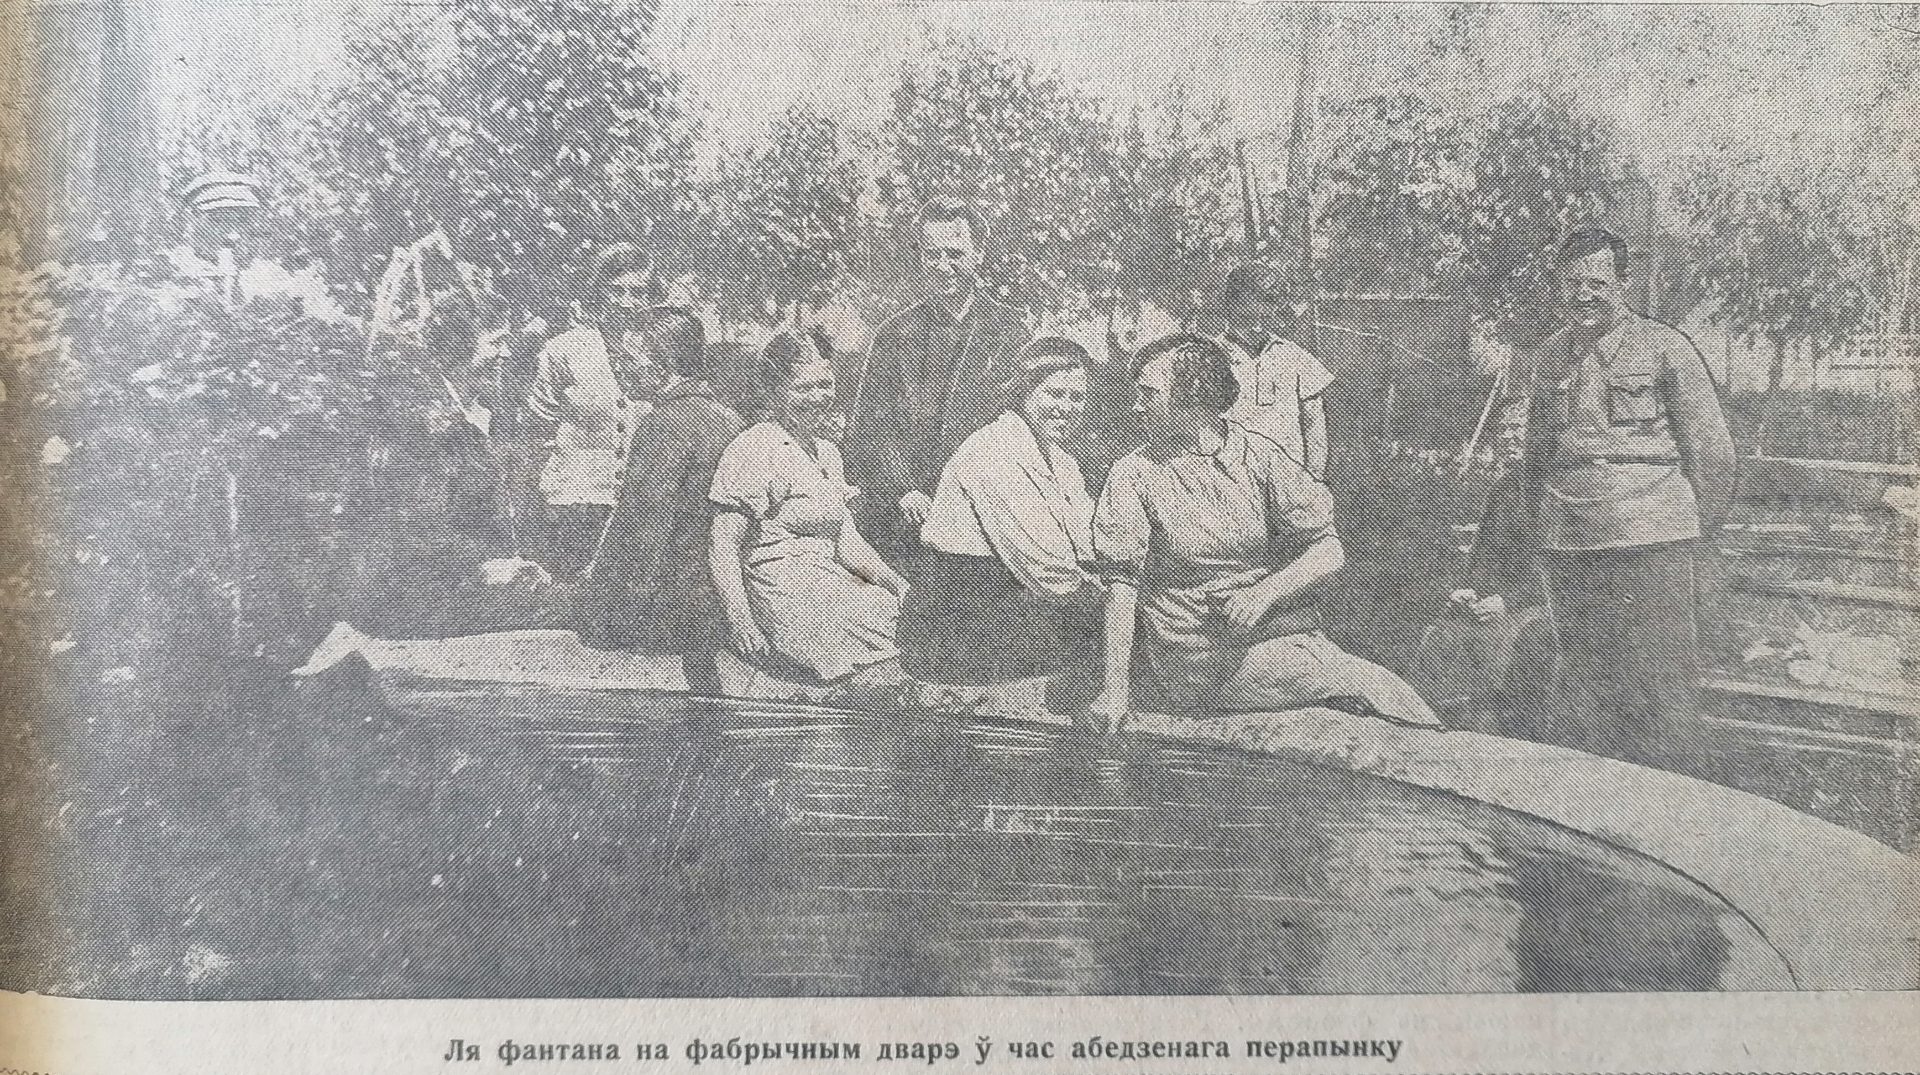 Фото из газеты Сцяг індустрыялізацыі, 24 июня 1938 года